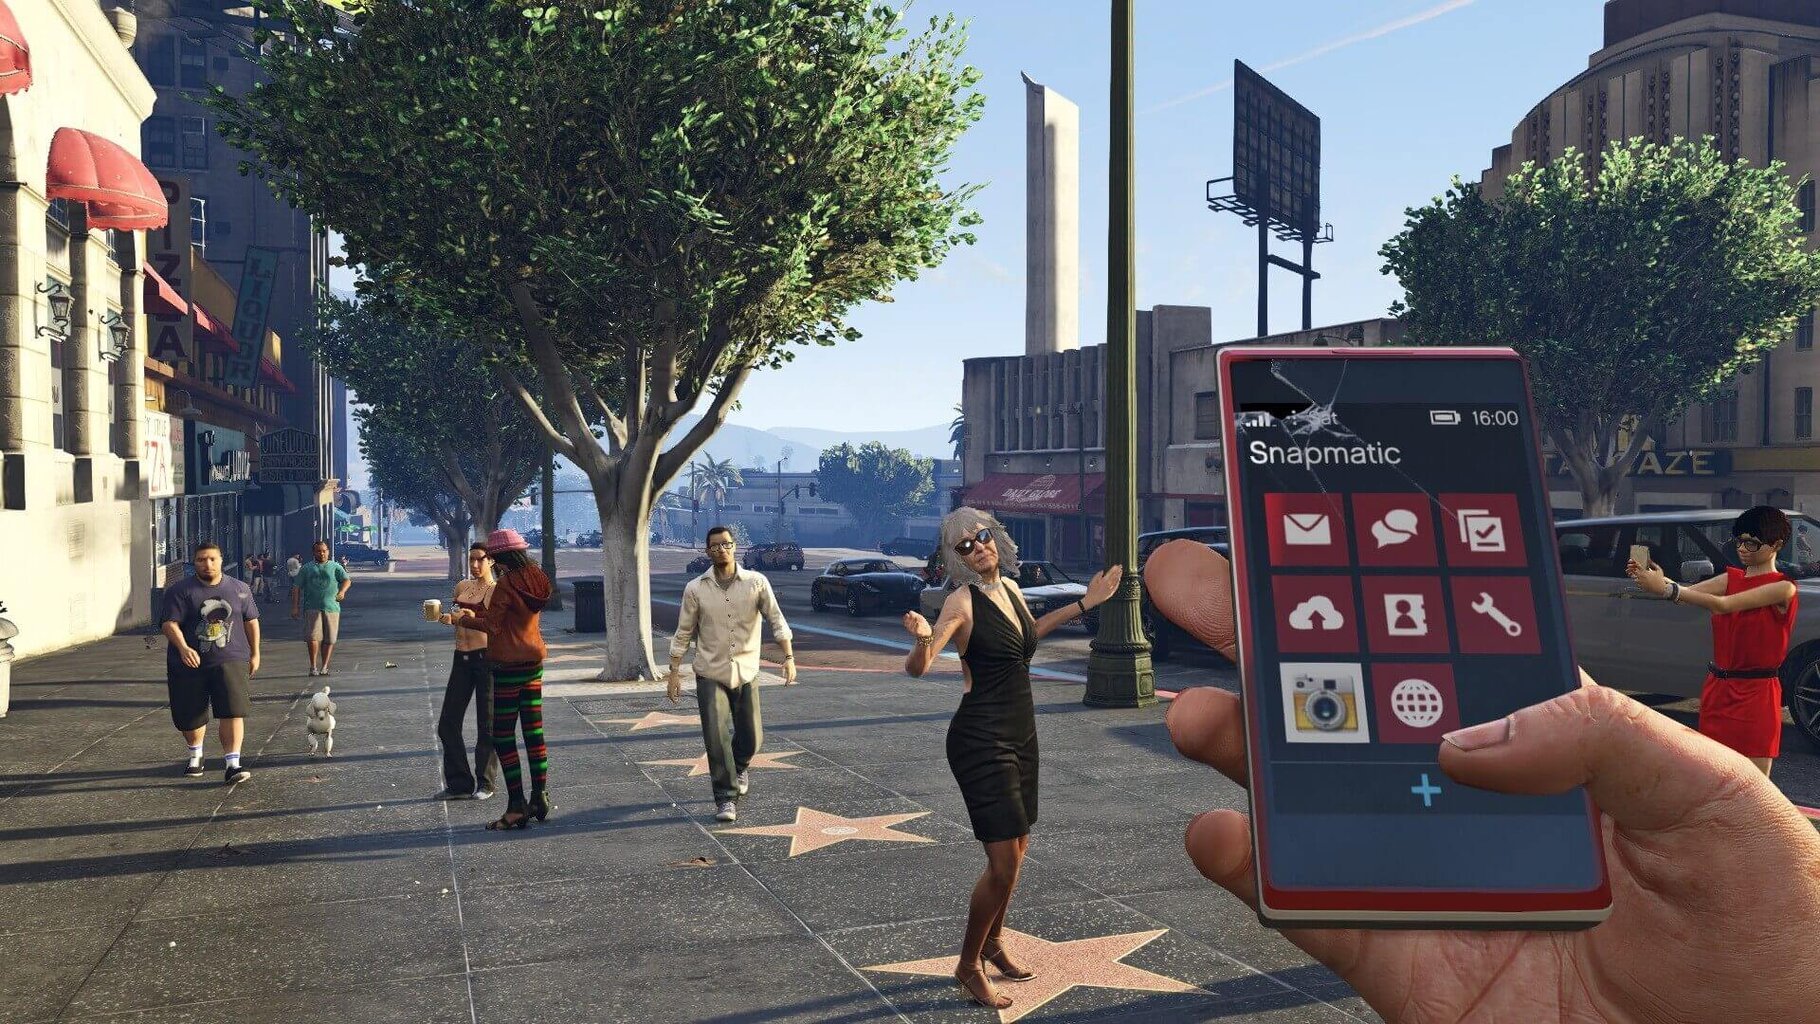 Grand Theft Auto 5 - Premium Edition (PS4) kaina ir informacija | Kompiuteriniai žaidimai | pigu.lt